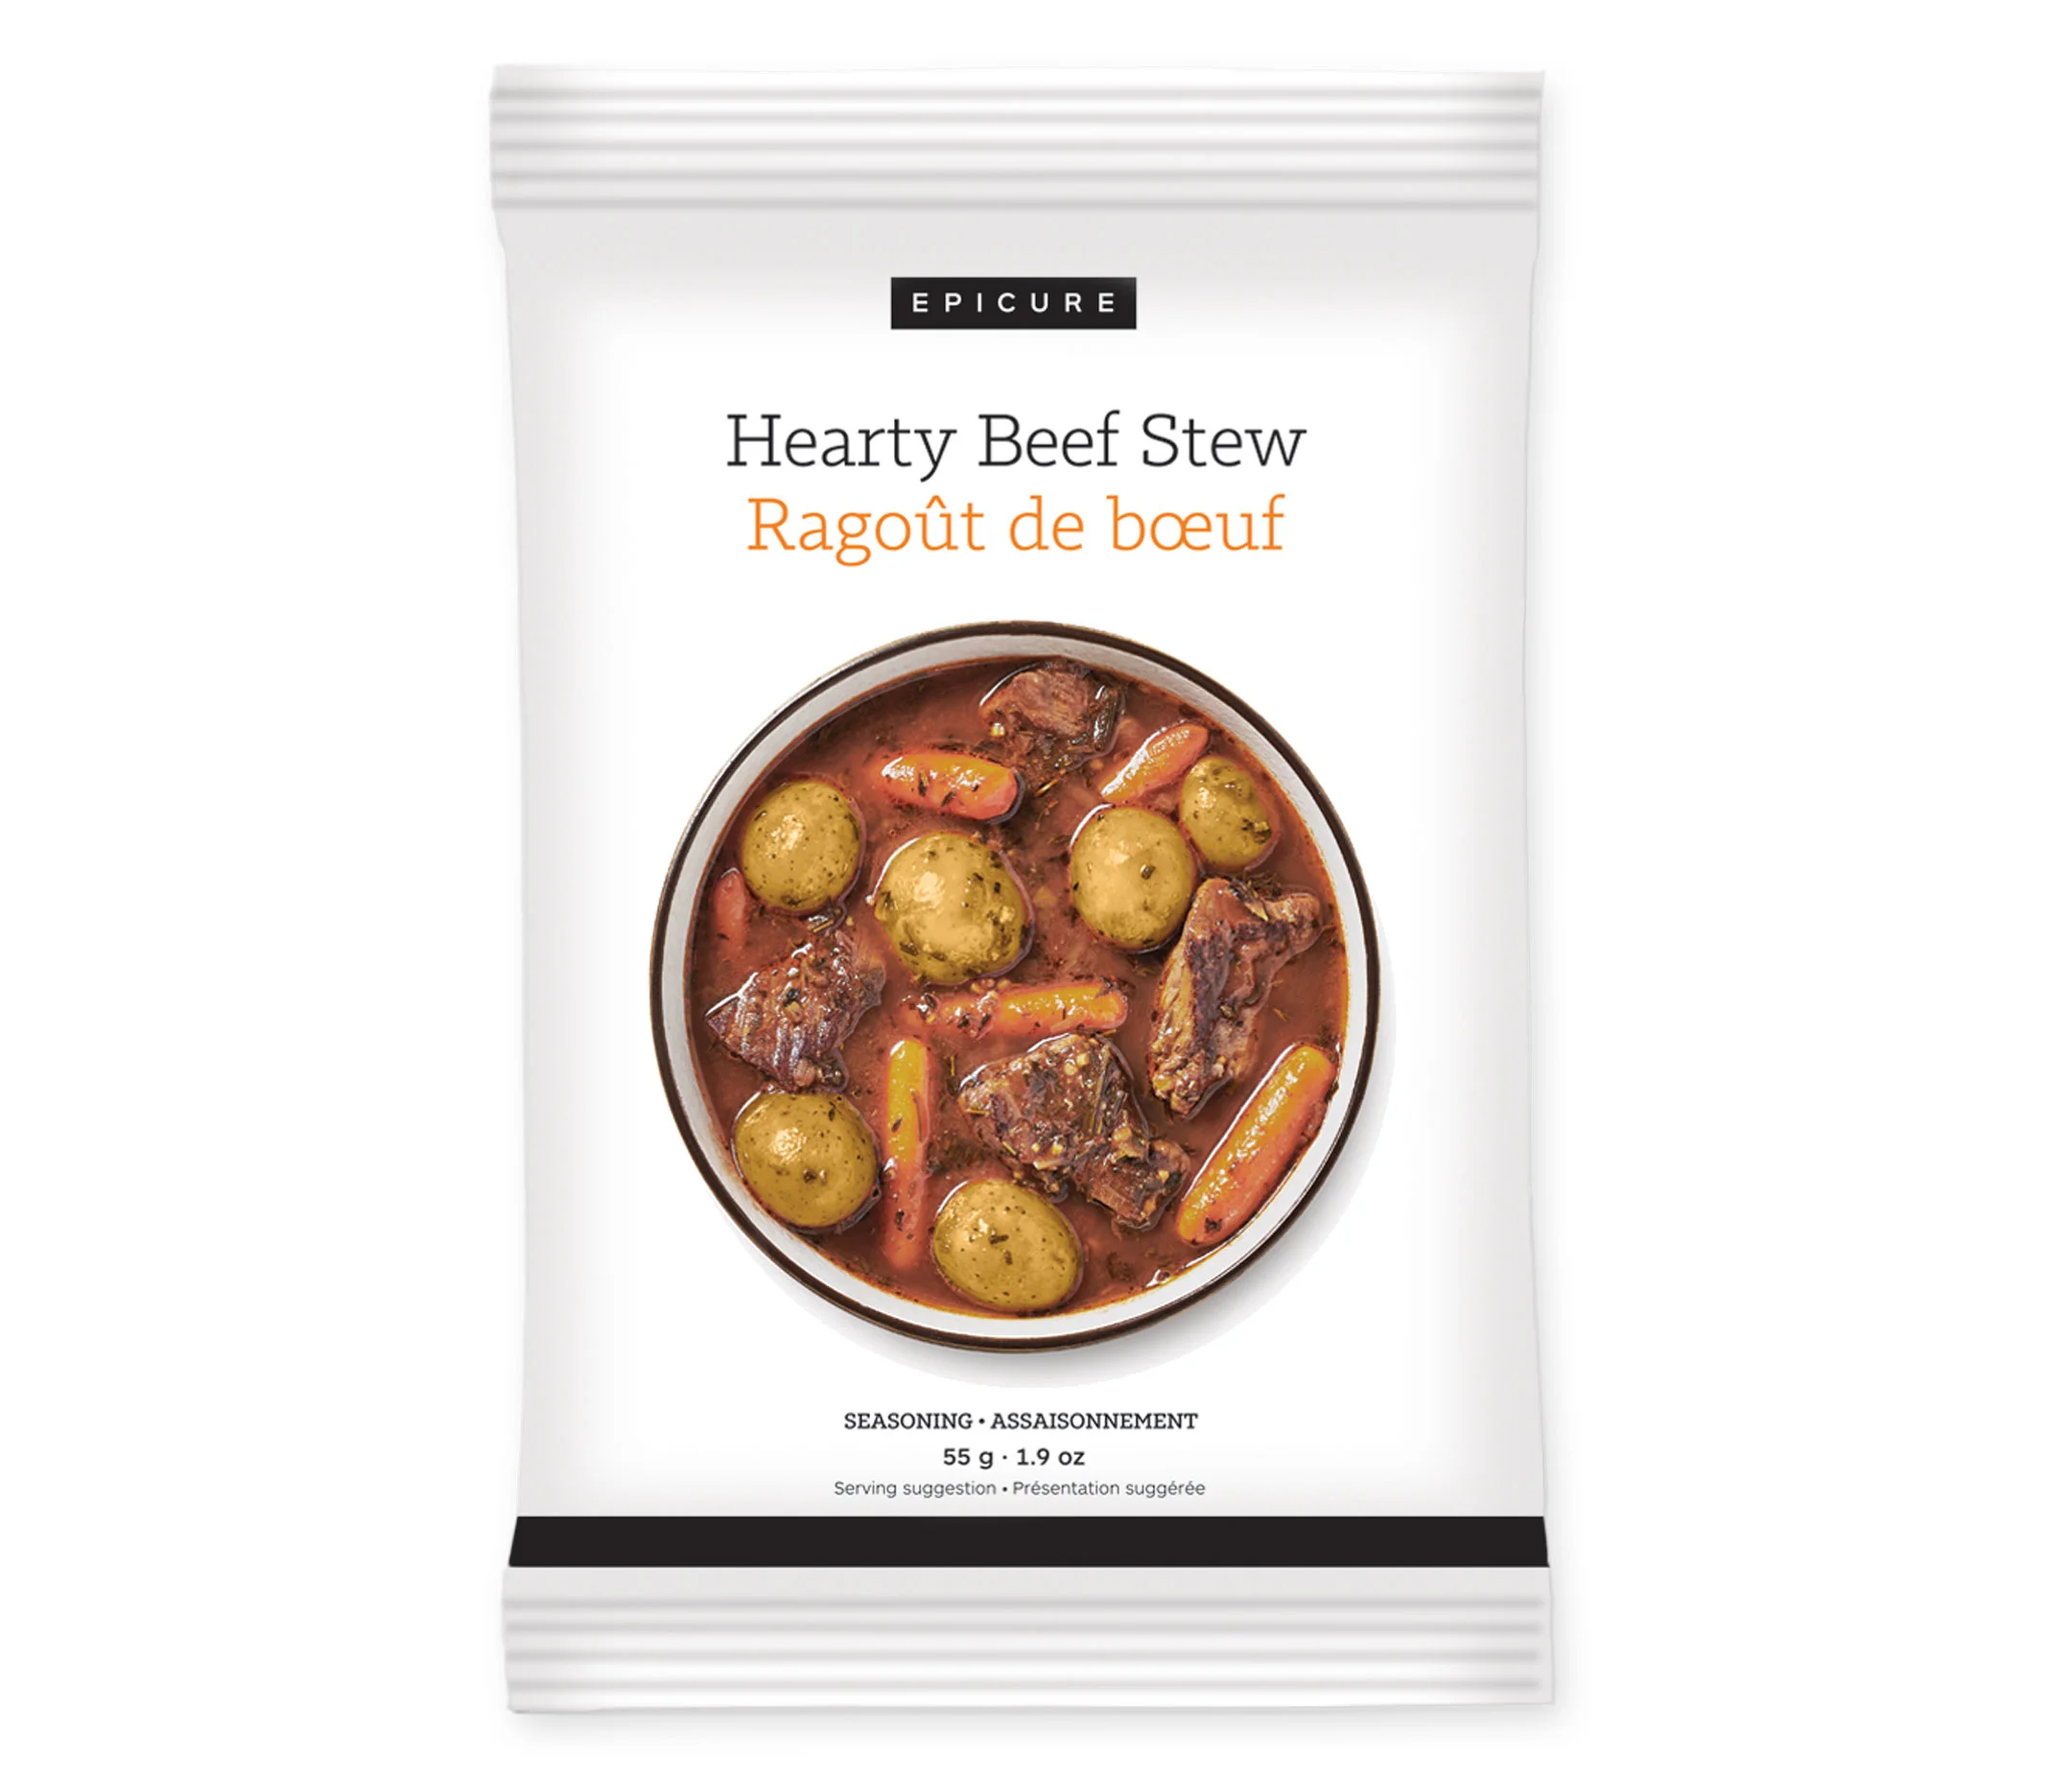 Hearty Beef Stew Seasoning (3pk)